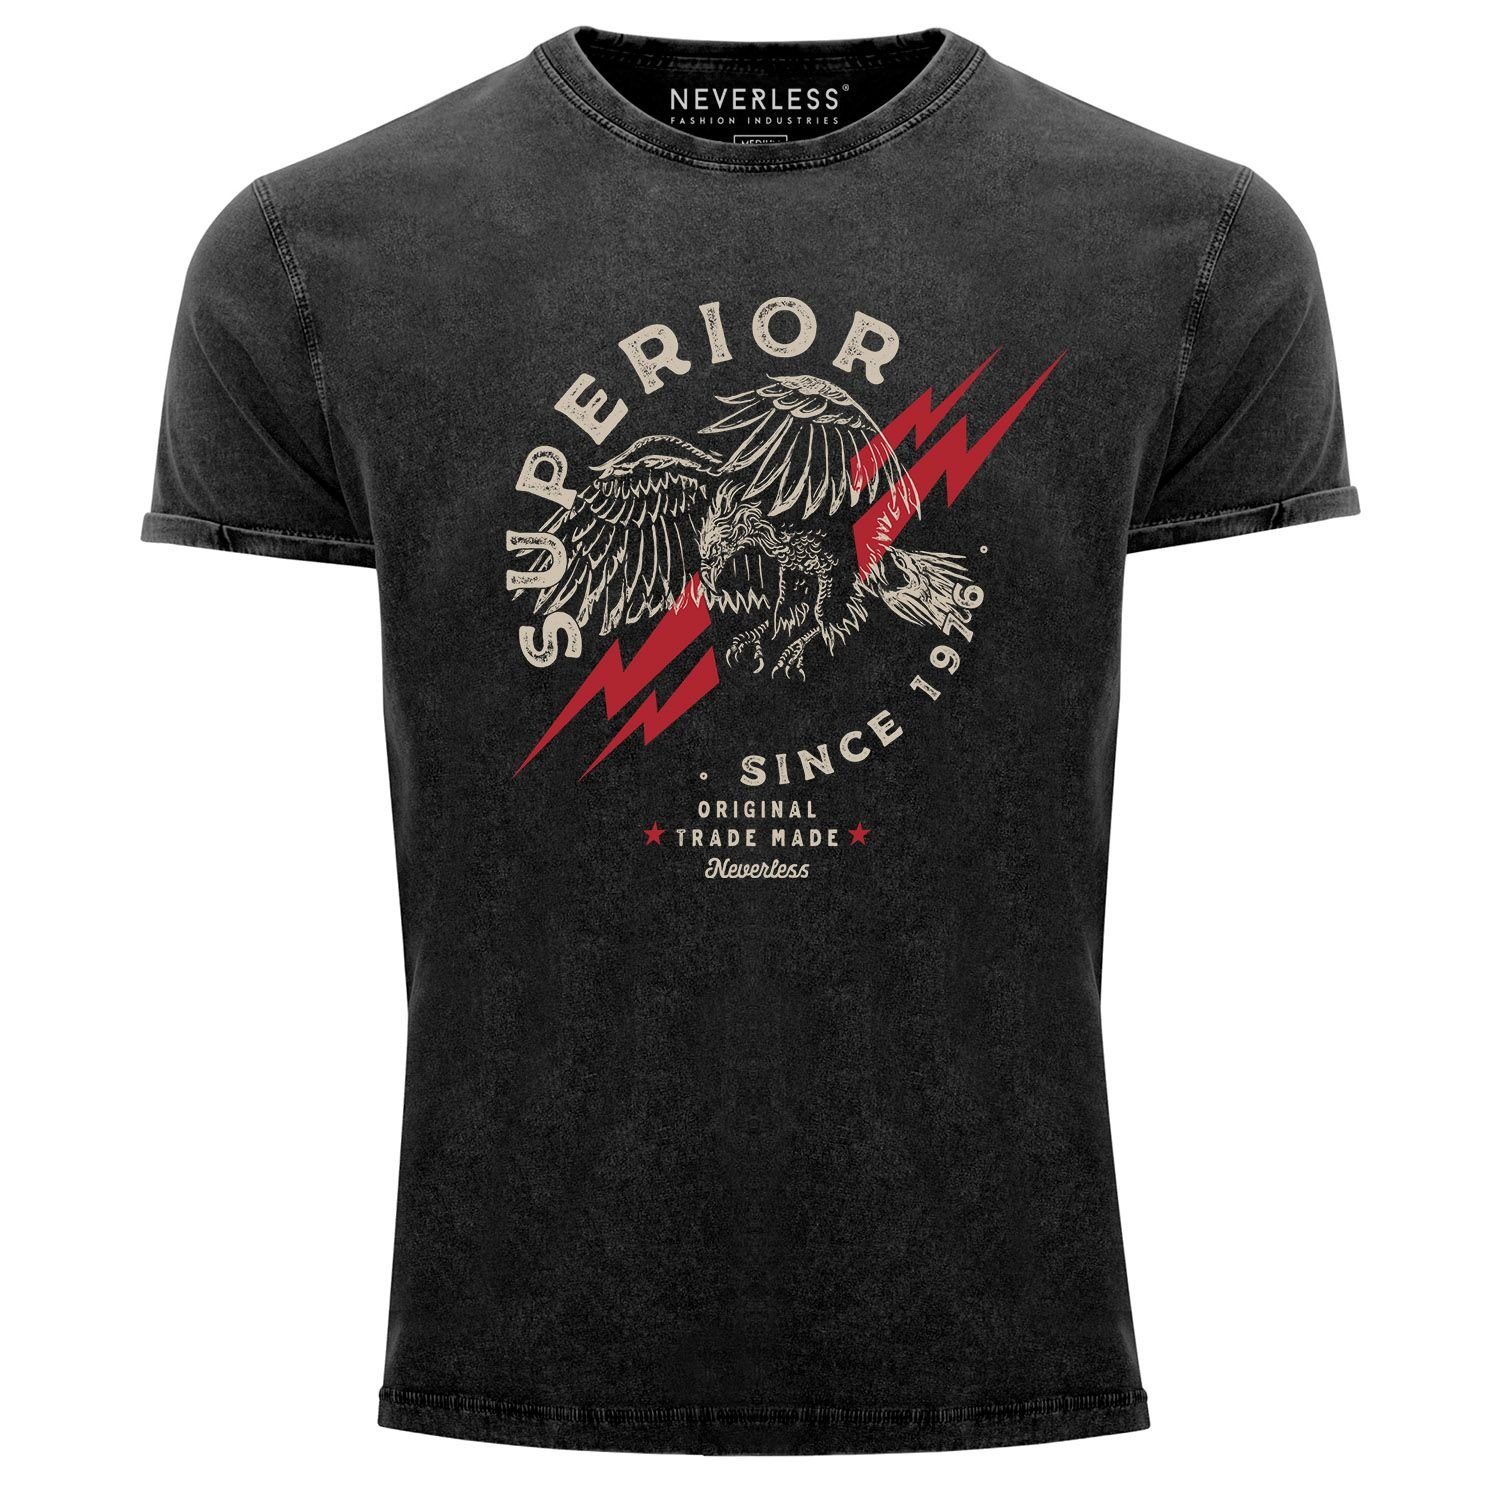 Neverless Print-Shirt Neverless® Herren T-Shirt Vintage Shirt Printshirt Superior Eagle Since 1976 Aufdruck Adler Print Used Look Slim Fit mit Print schwarz